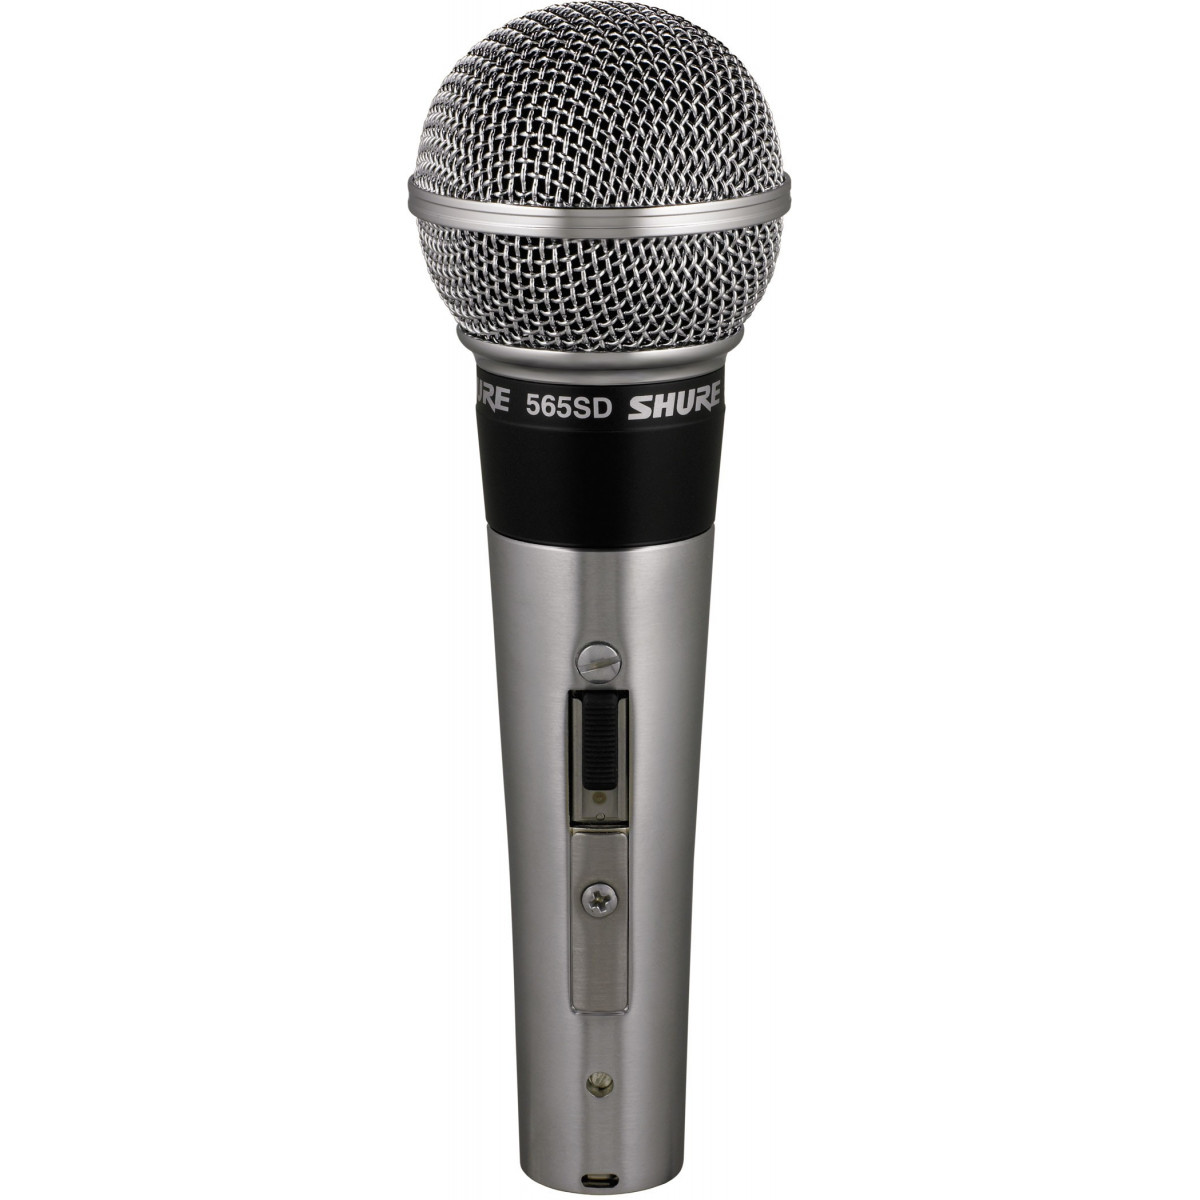 Micrófono vocal que proporciona una excelente reproducción de la voz en el escenario gracias a su patrón cardioide.